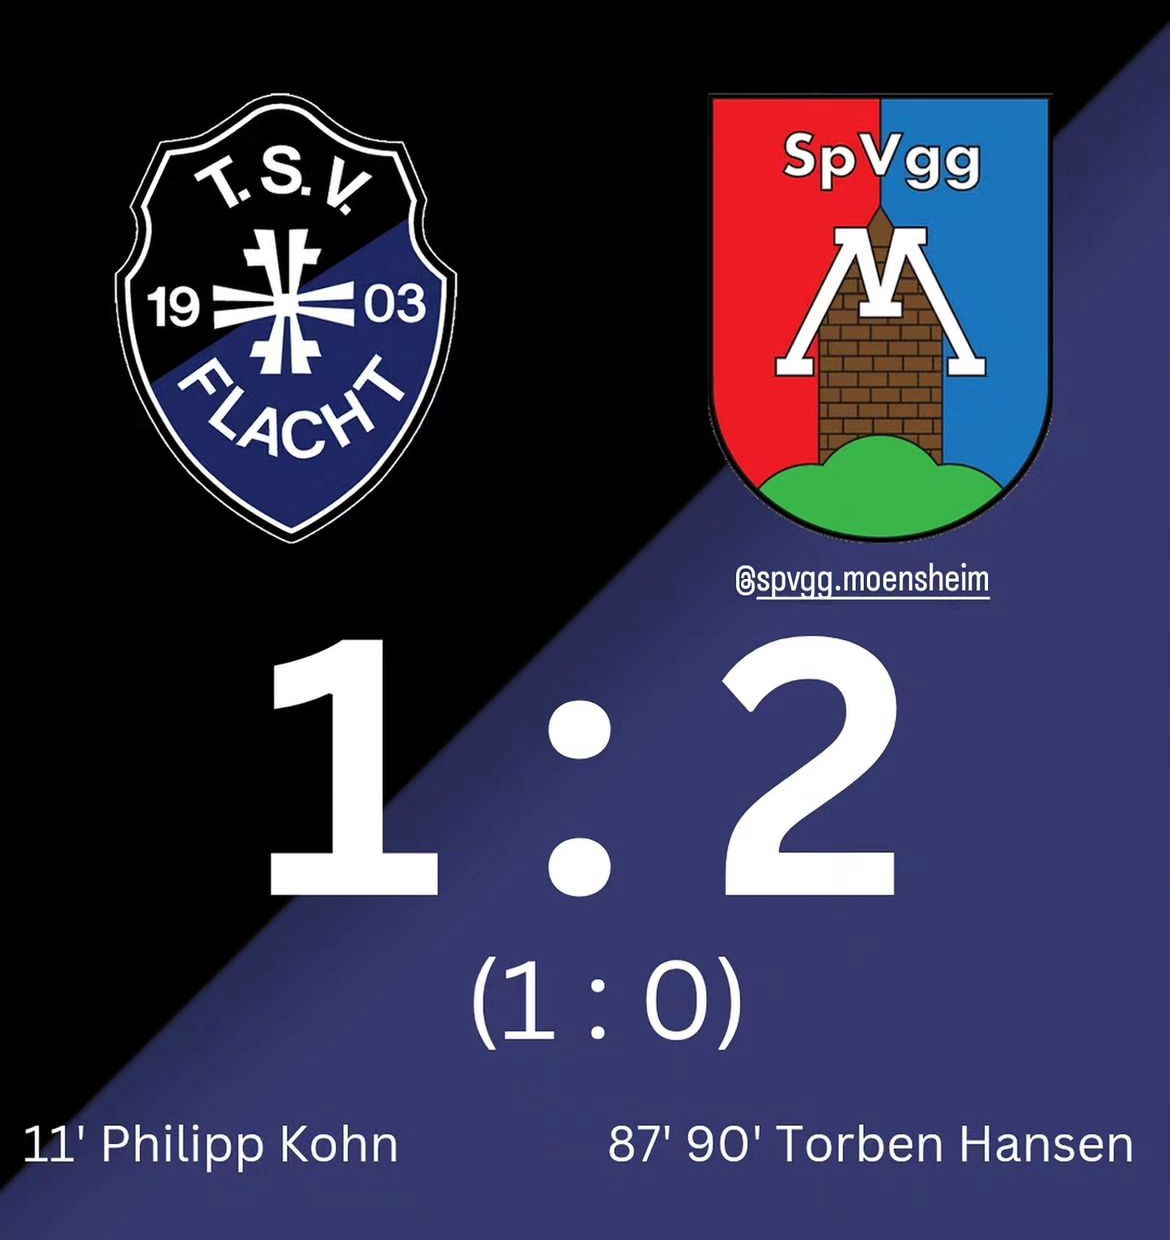 Rückblick von unserem Pressewart Wopfi: TSV Flacht - SpVgg Mönsheim 1:2 (1:0)